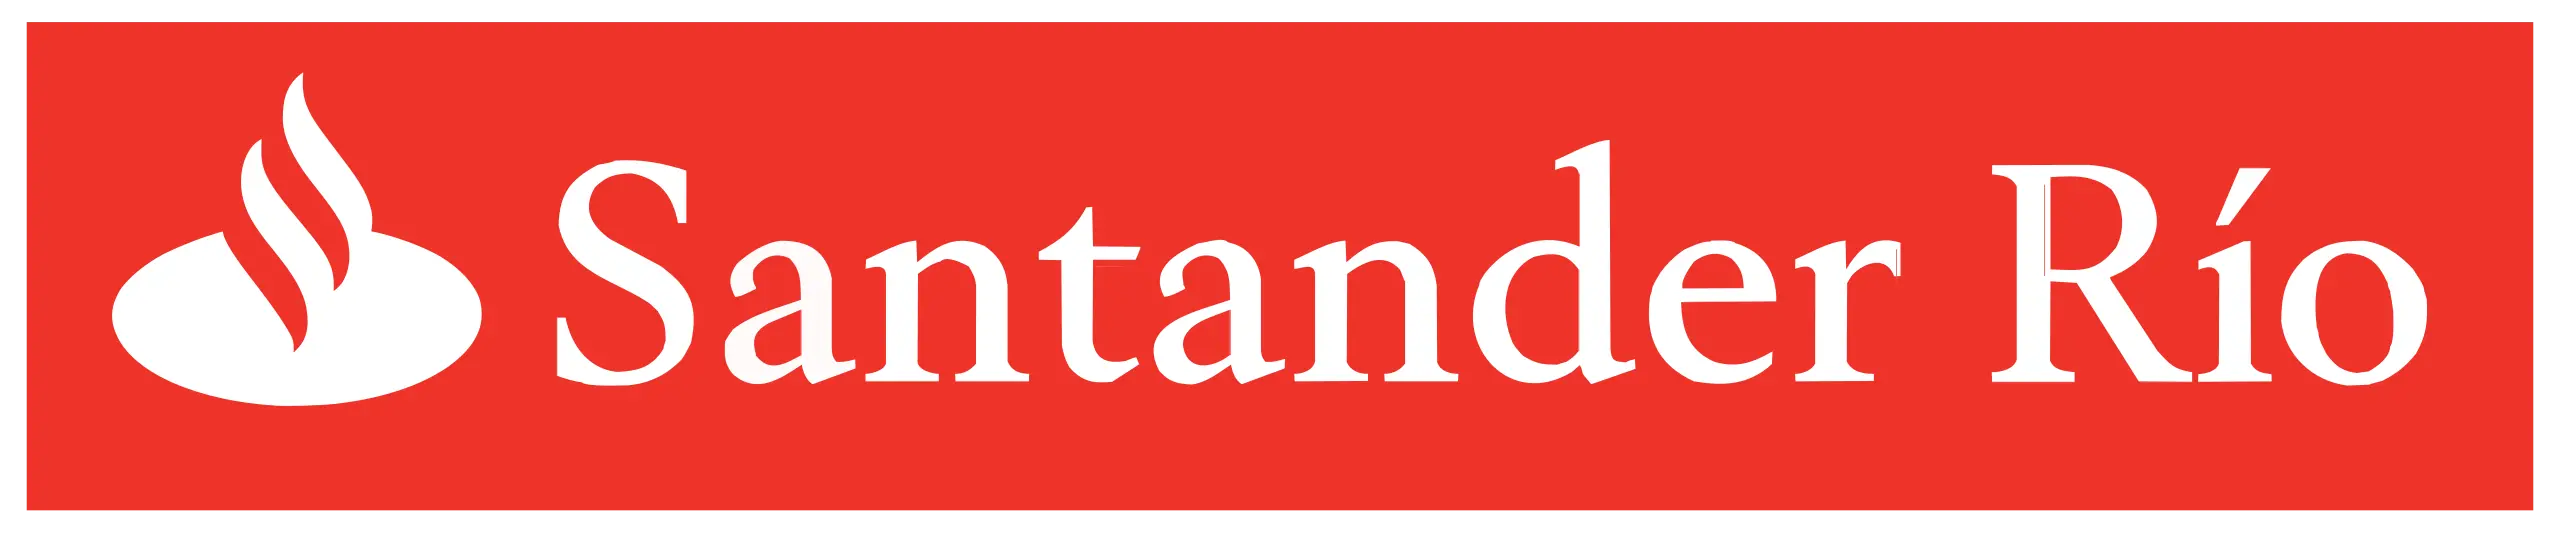 Santanderrio_logo.svg_